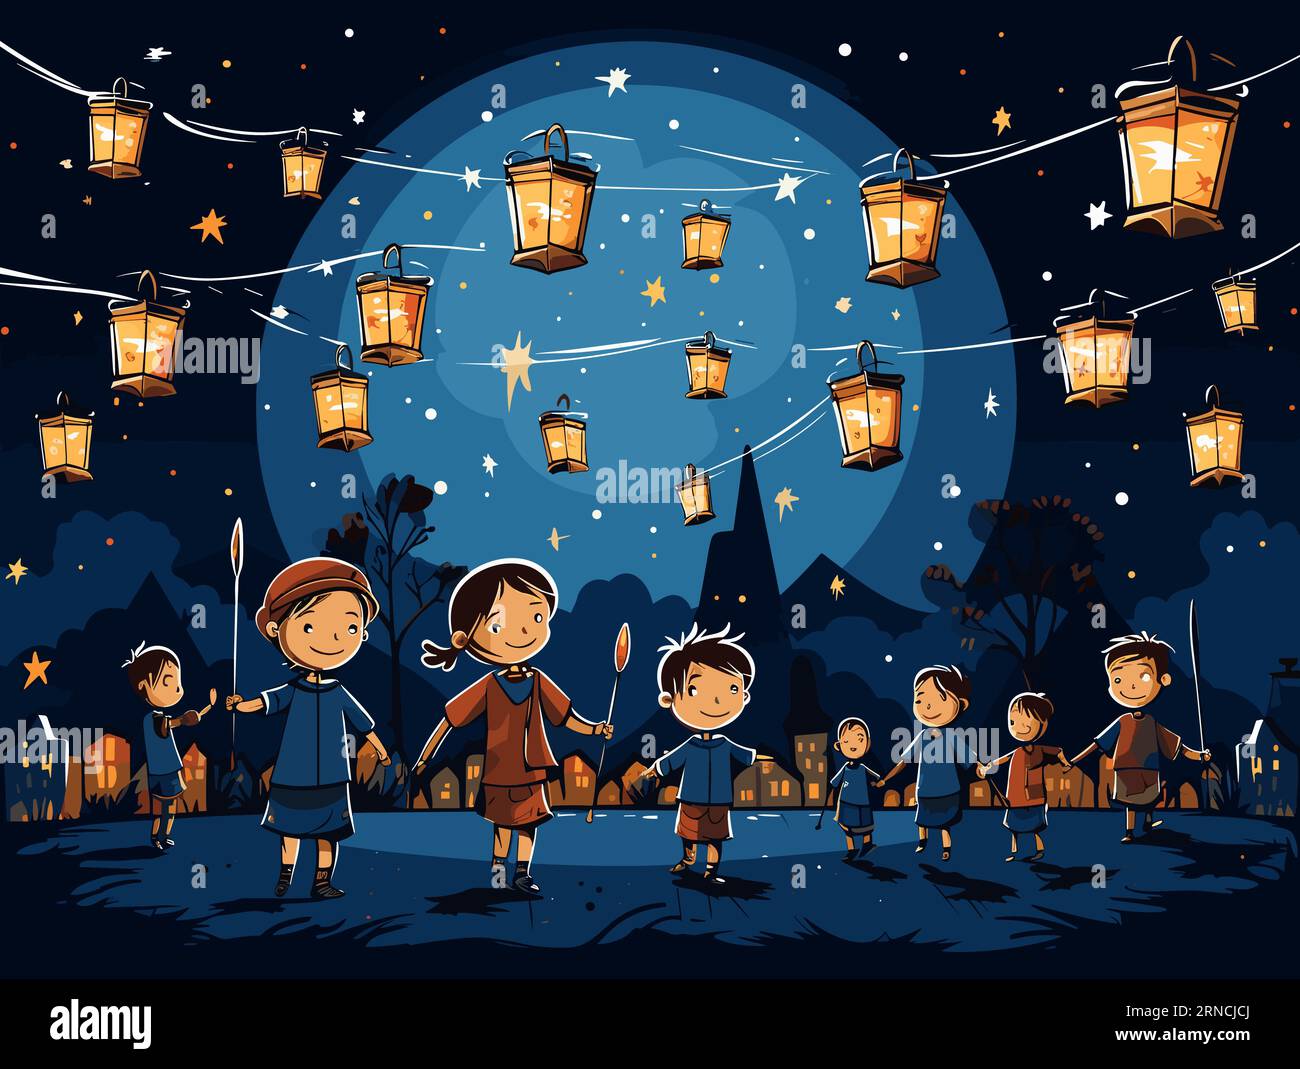 Enfants dansant avec des lanternes sous Un ciel Moonlit, dans le style de la conception détaillée des personnages, Marine légère, Transavanguardia, costumes détaillés, Villag Illustration de Vecteur